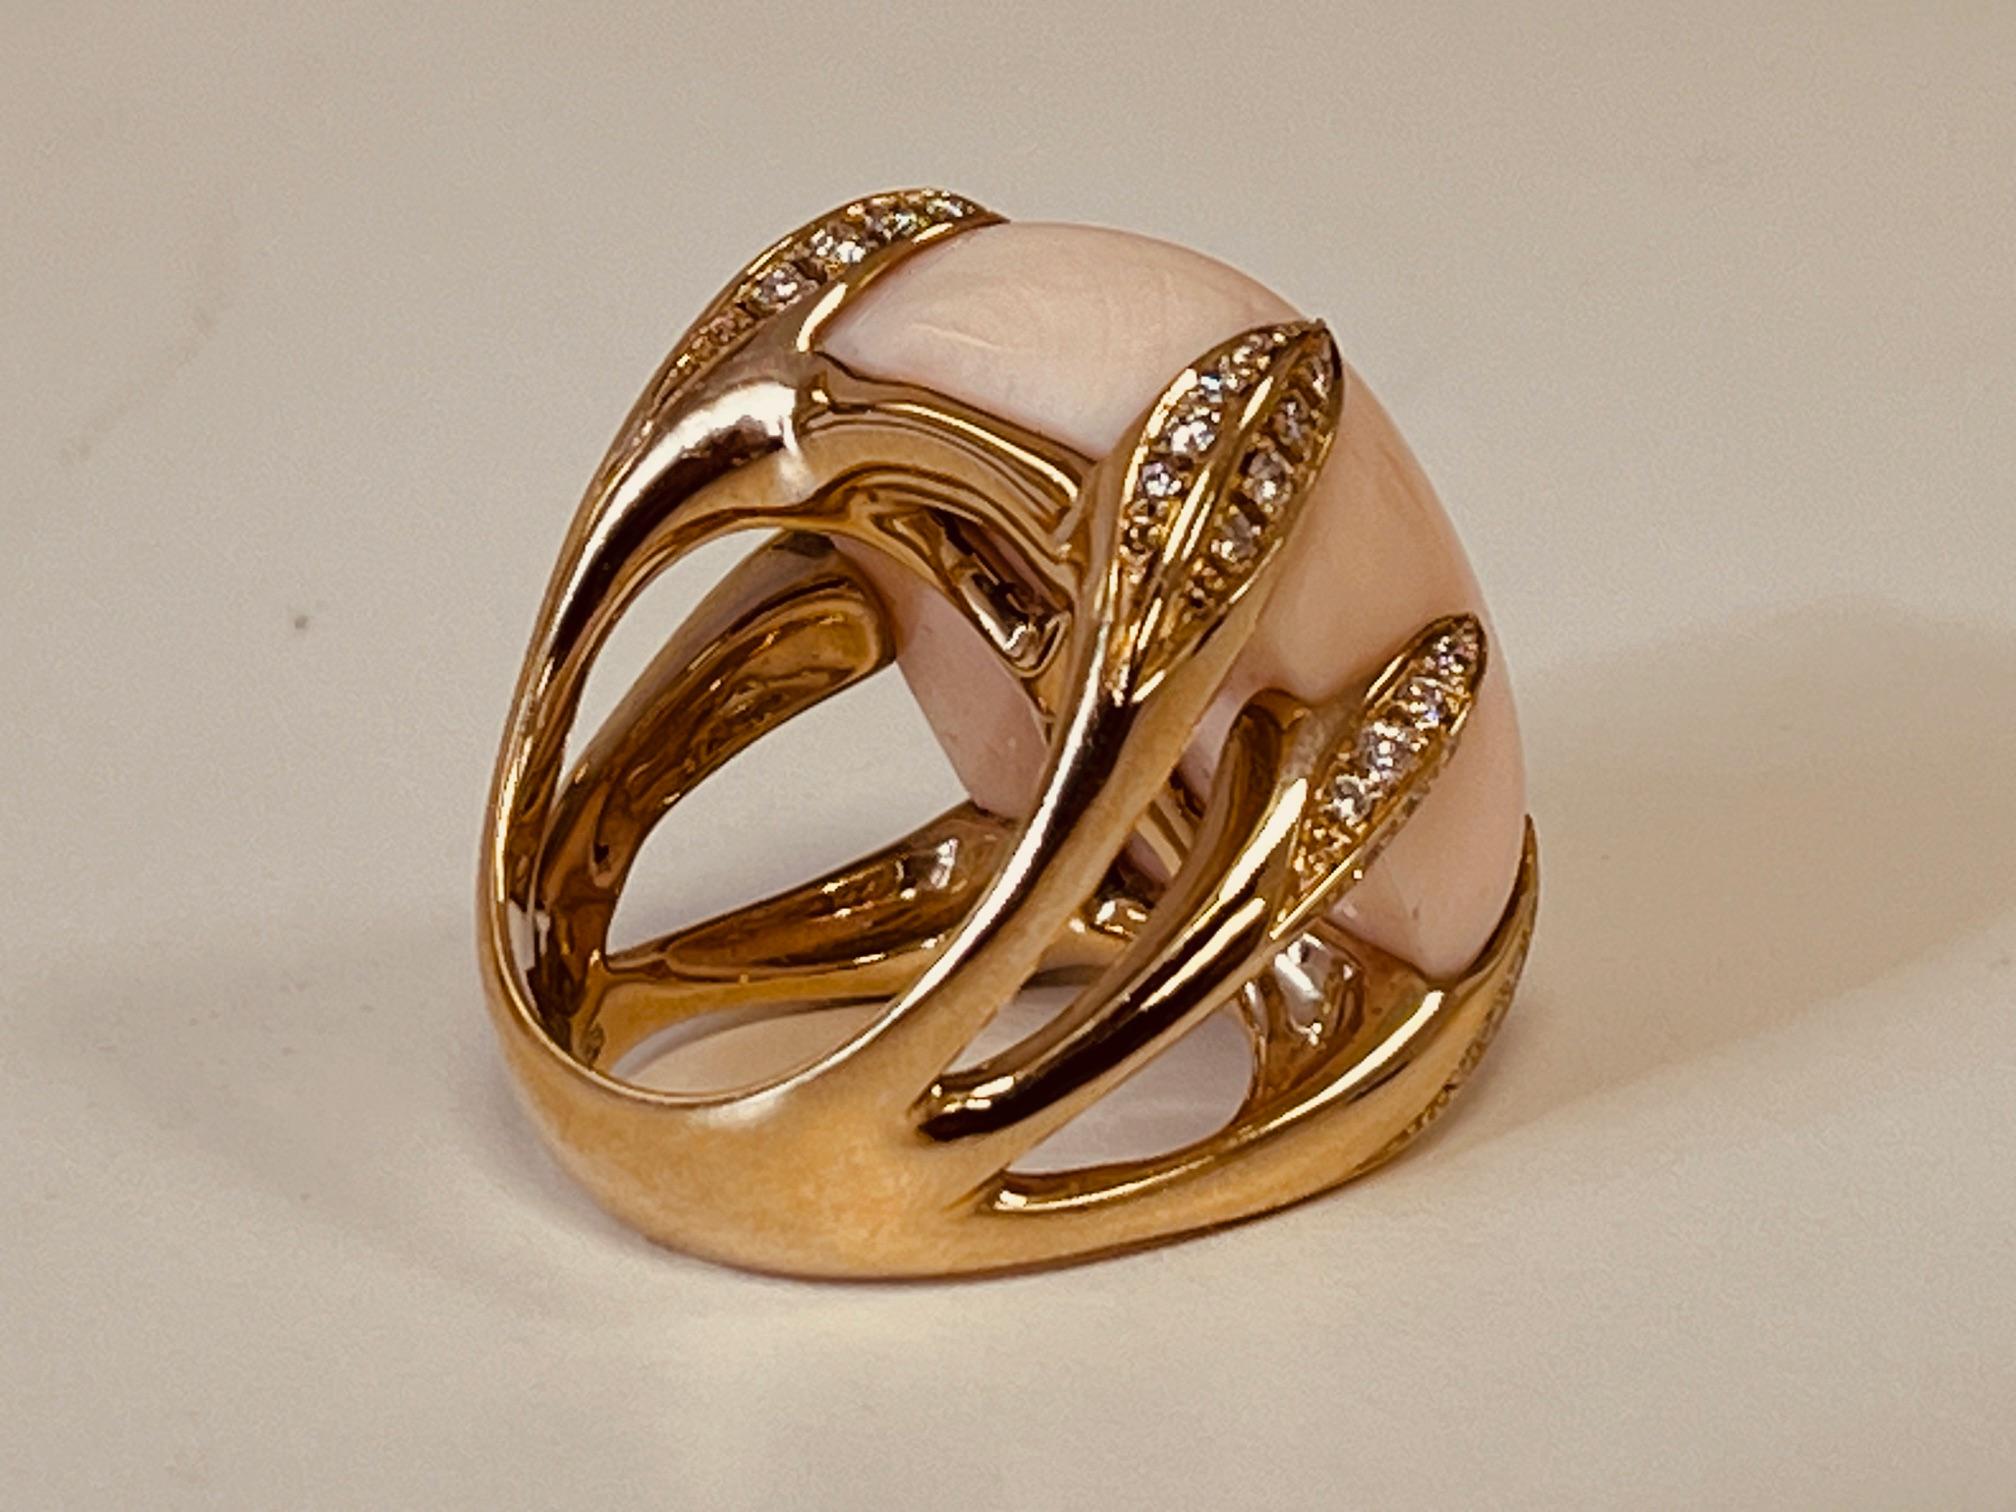 GAVELLO Ring aus 18 Karat Gold, besetzt mit einer Engelshautkoralle, die von sechs schweren diamantbesetzten Krallen gehalten wird. Die Koralle ist 25 x 20 mm groß und 12 mm tief. Bruttogewicht 30.7 Gramm. Ungefähres Gewicht der Diamanten: 75ct. Auf